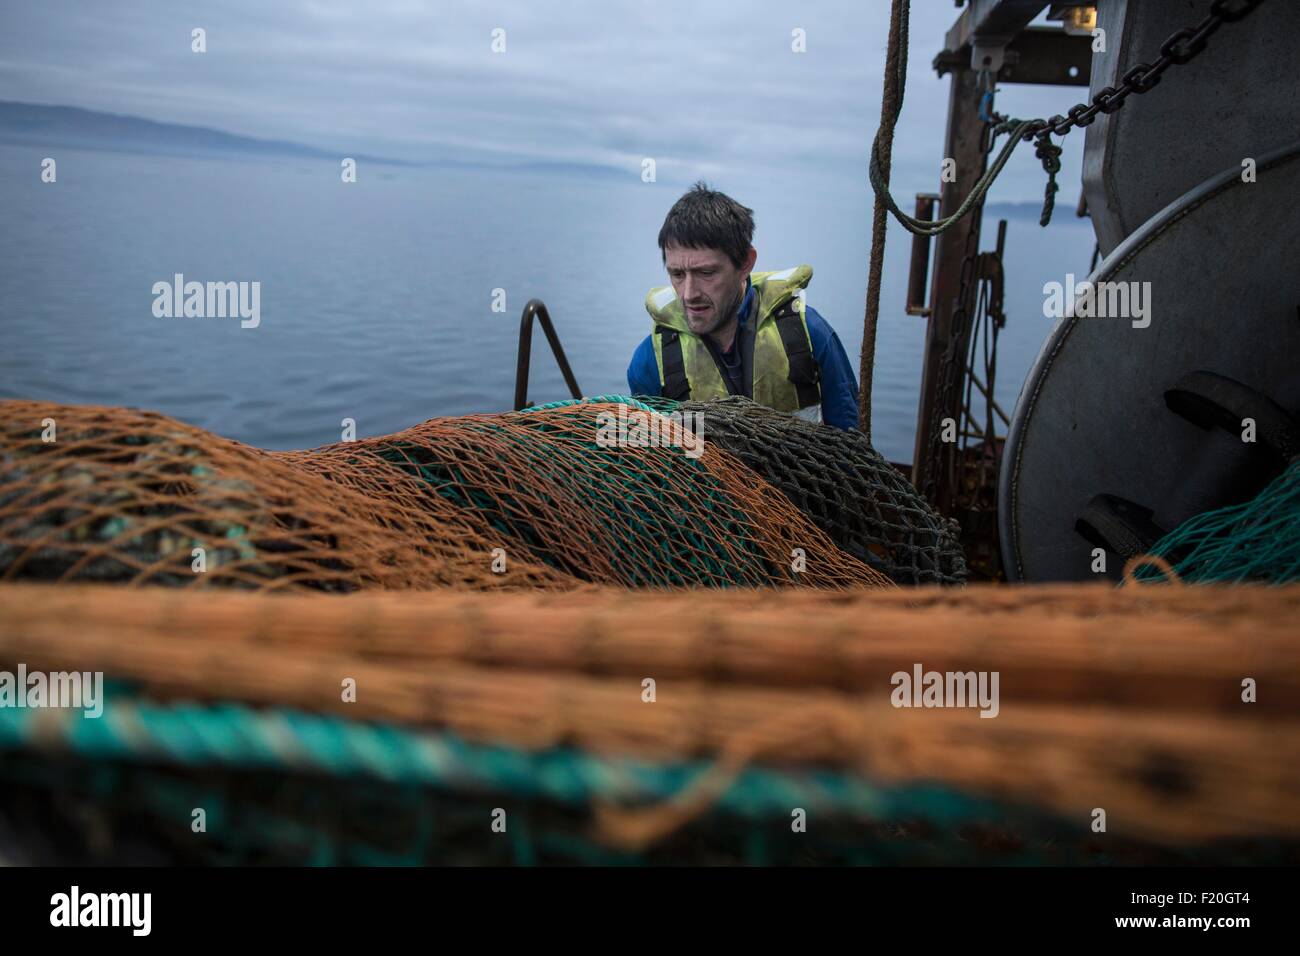 La préparation de pêcheur net, île de Skye, Écosse Banque D'Images